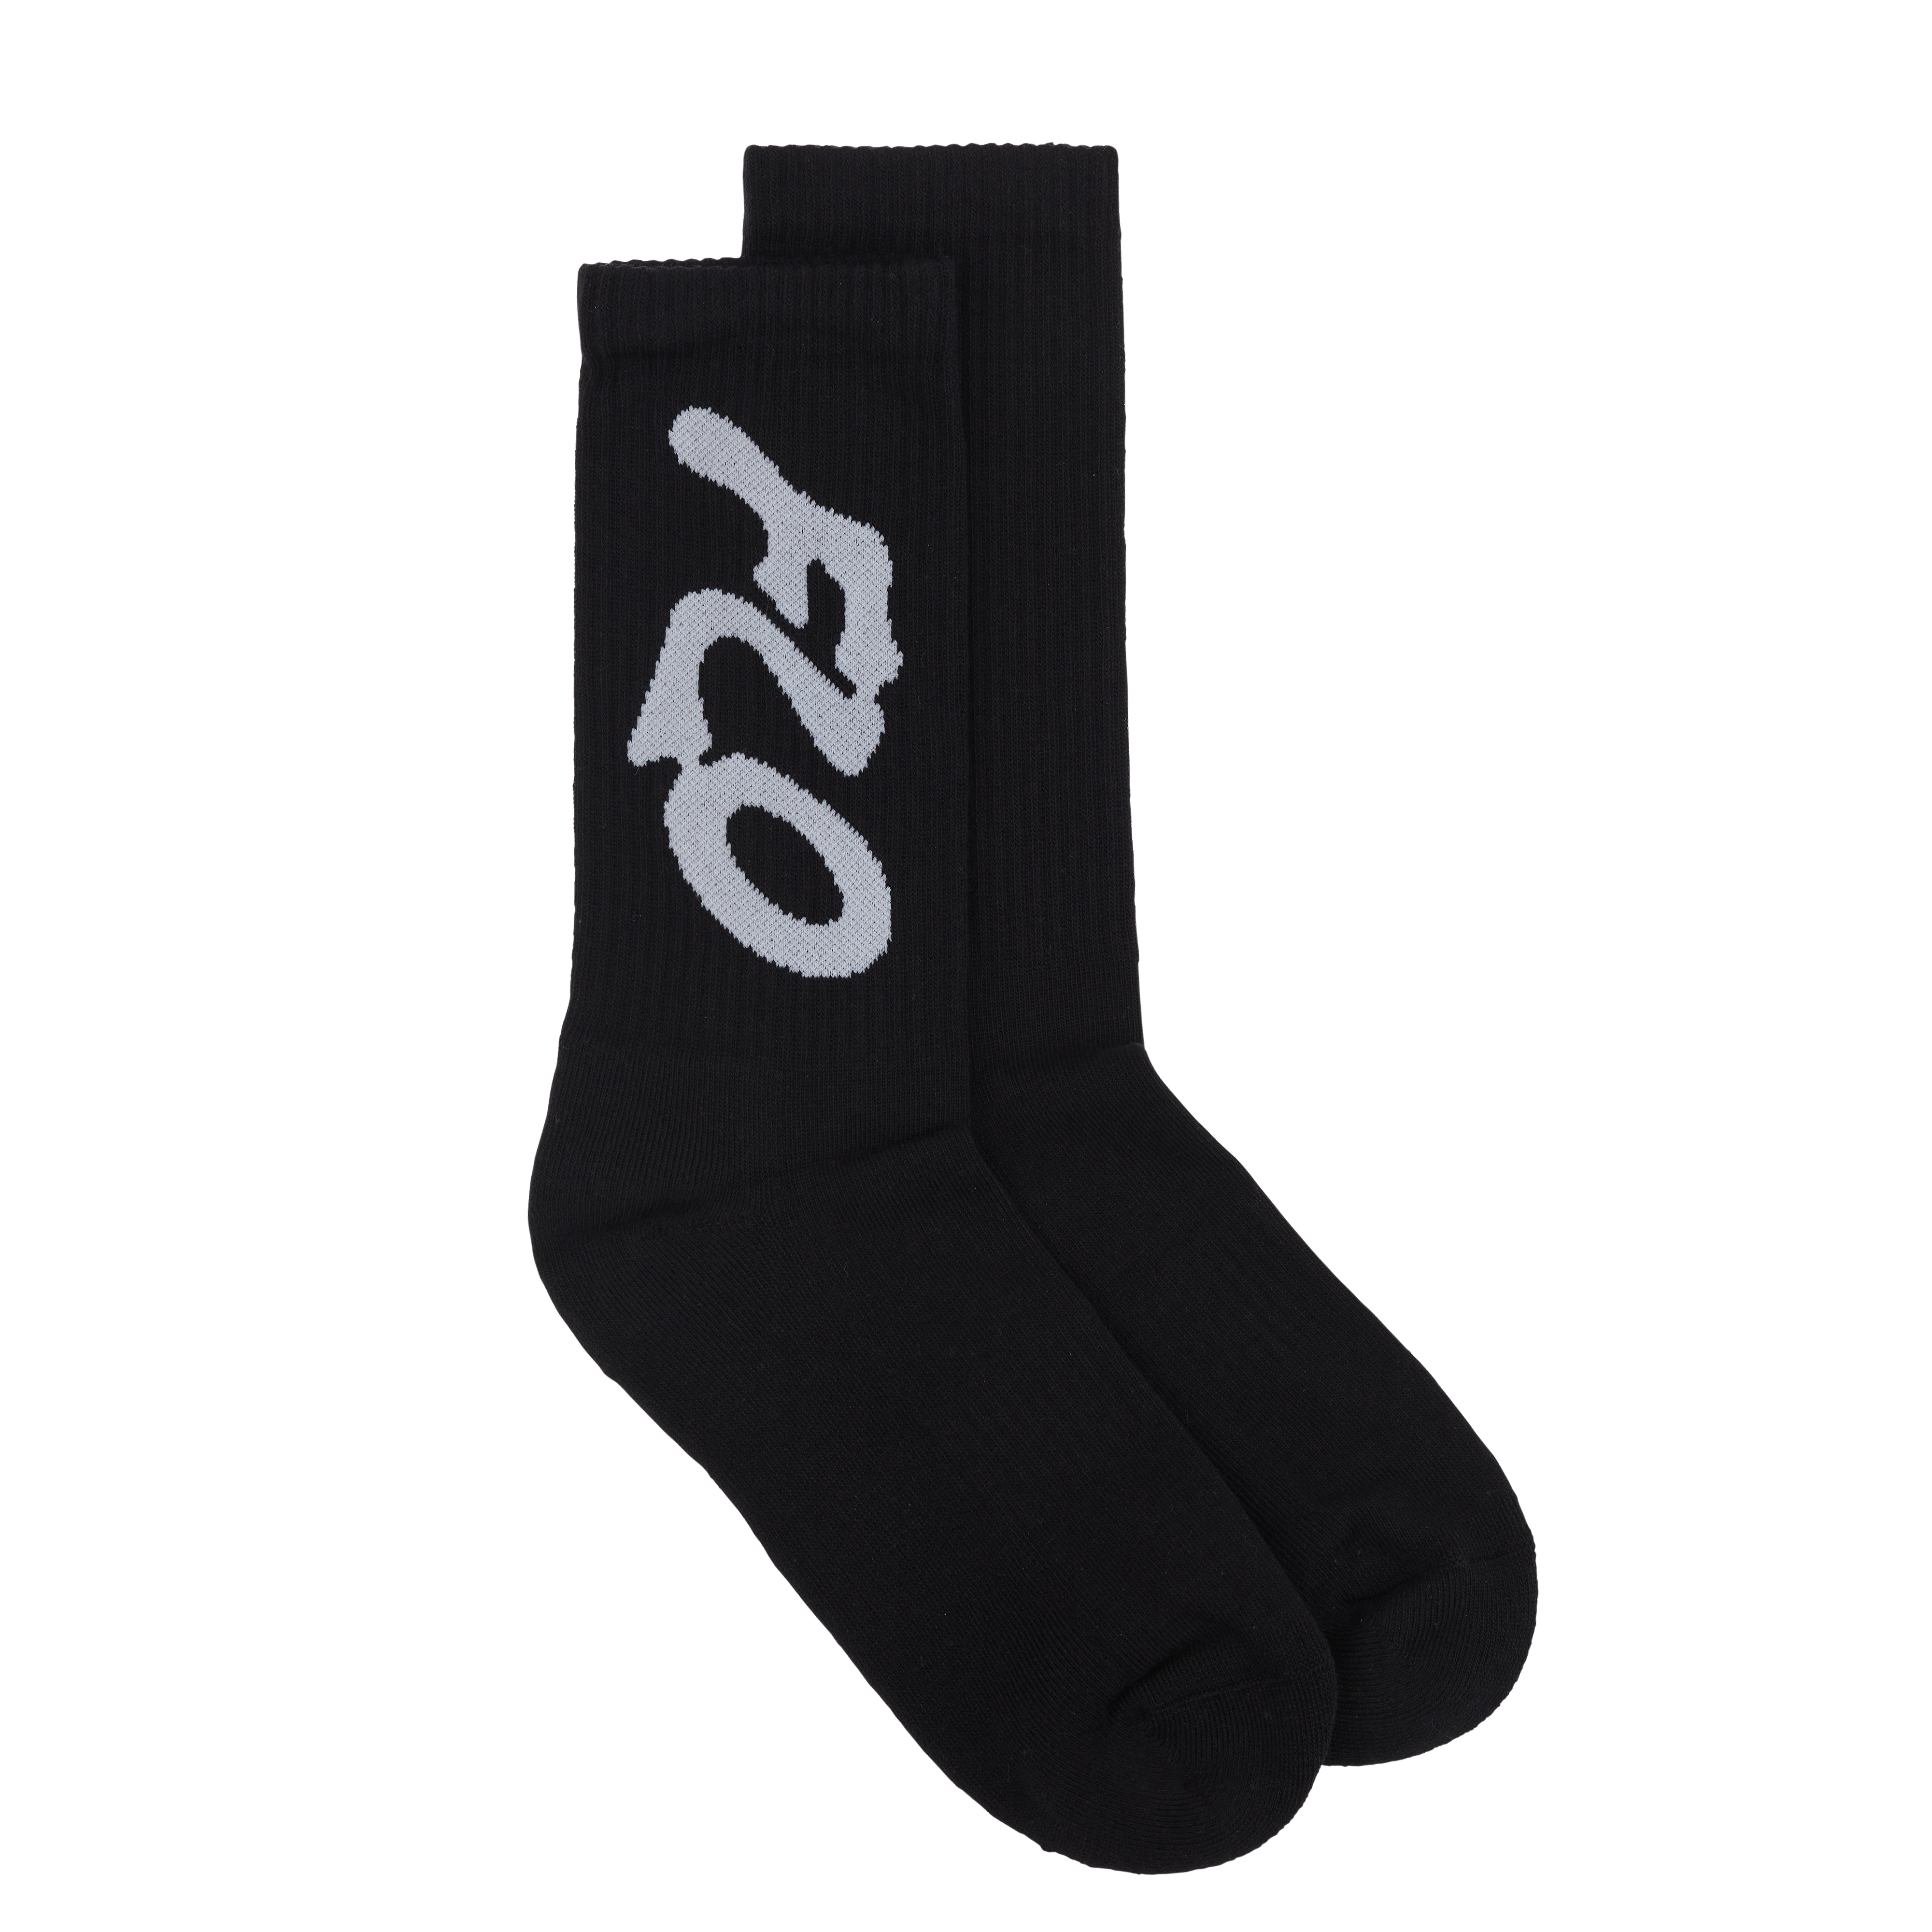 FLO - Black FLO socks